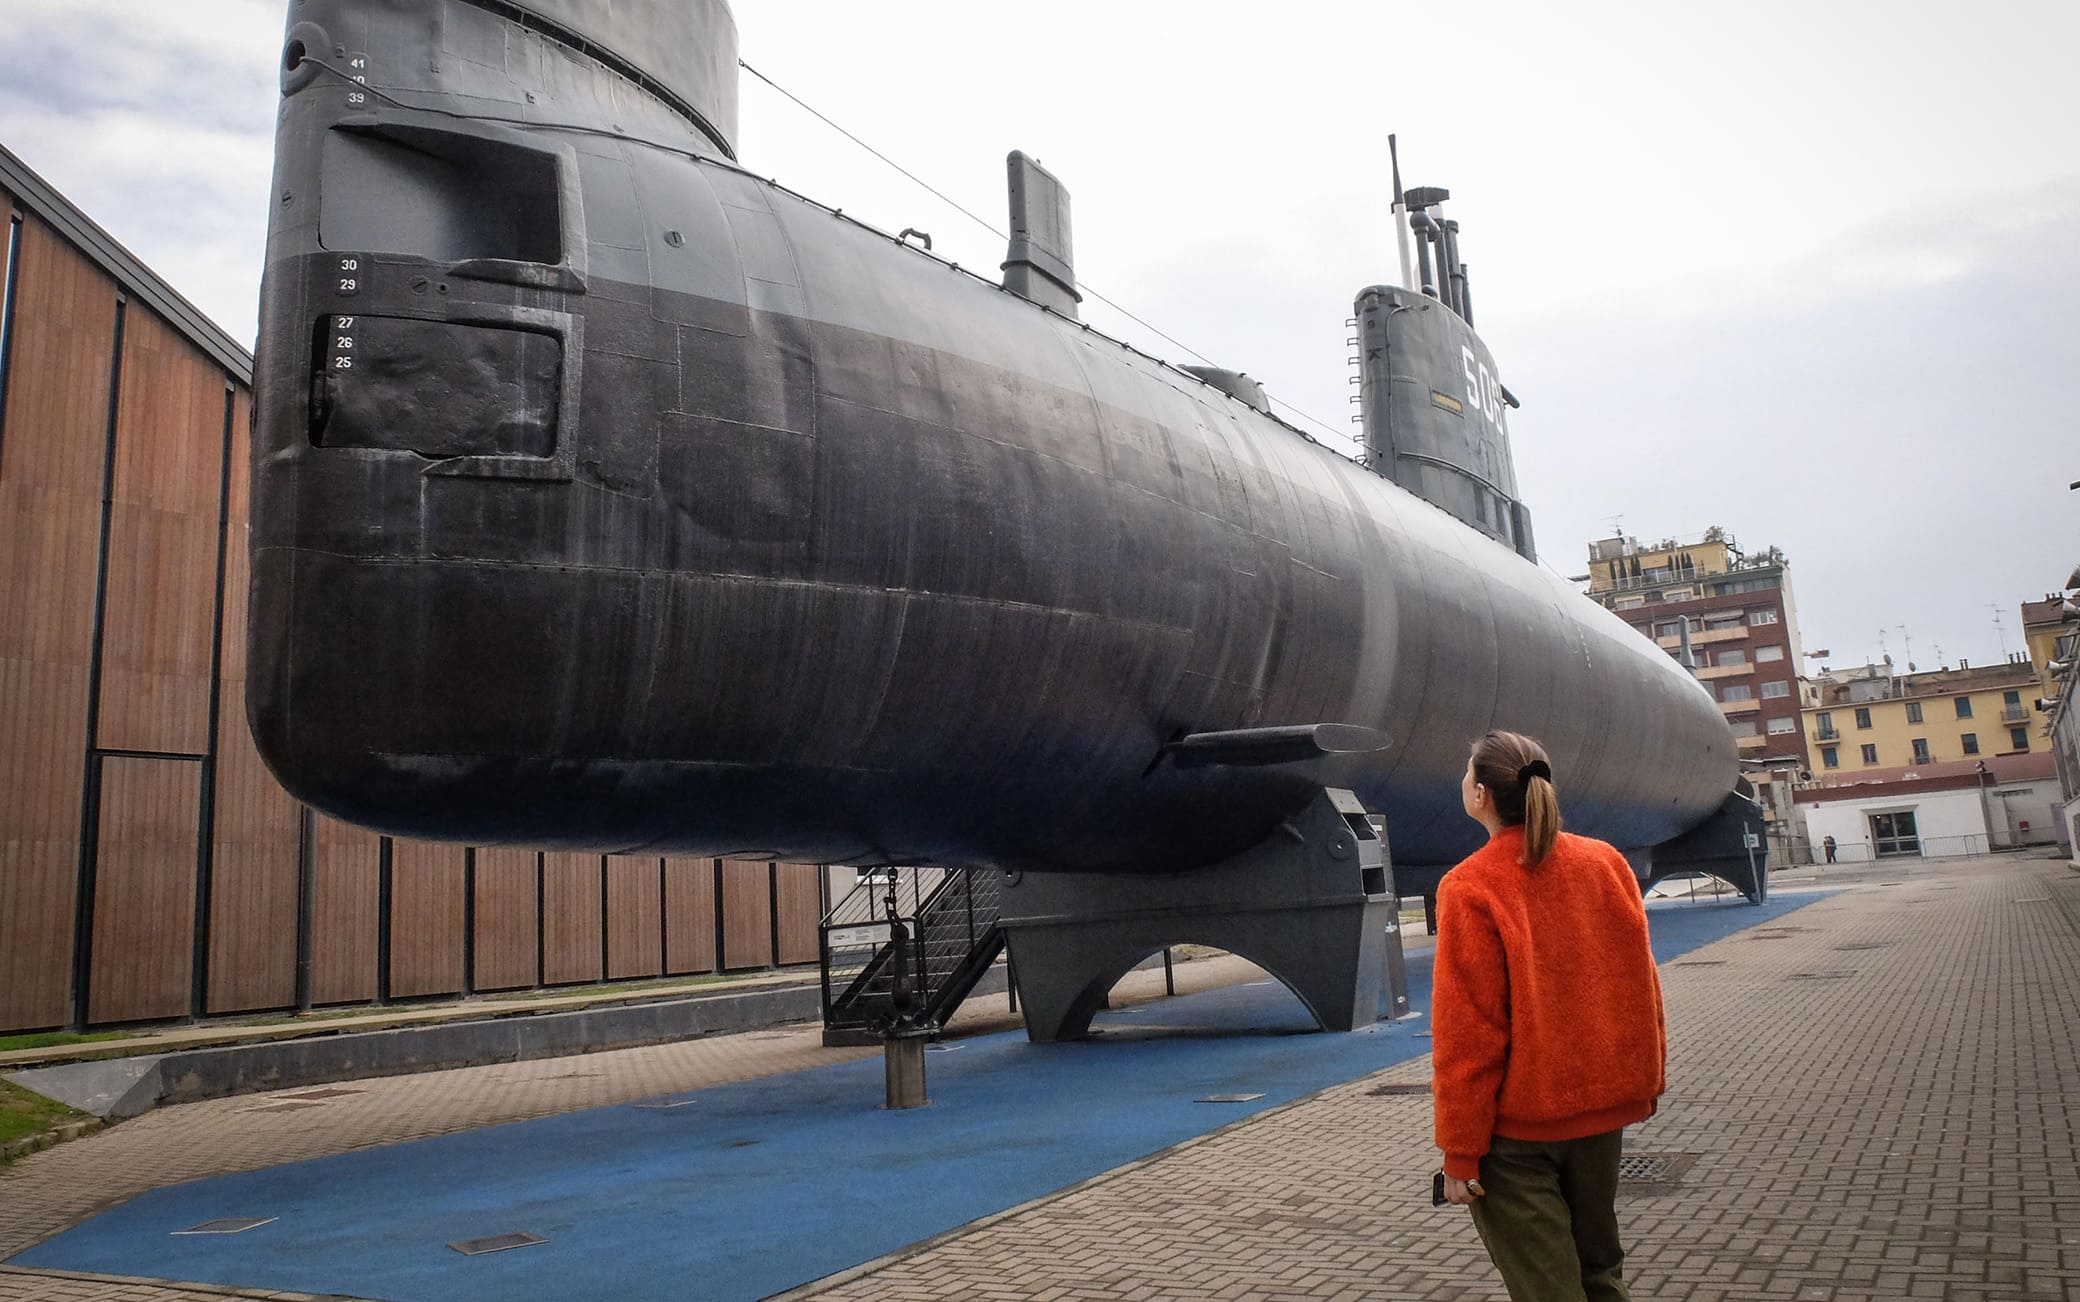 Rimasto chiuso il sottomarino Toti alla riapertura, dopo la pausa dovuta all’emergenza del coronavirus Covid-19, del Museo della Scienza e Tecnologia, Milano, 3 marzo 2020. Ansa/Matteo Corner